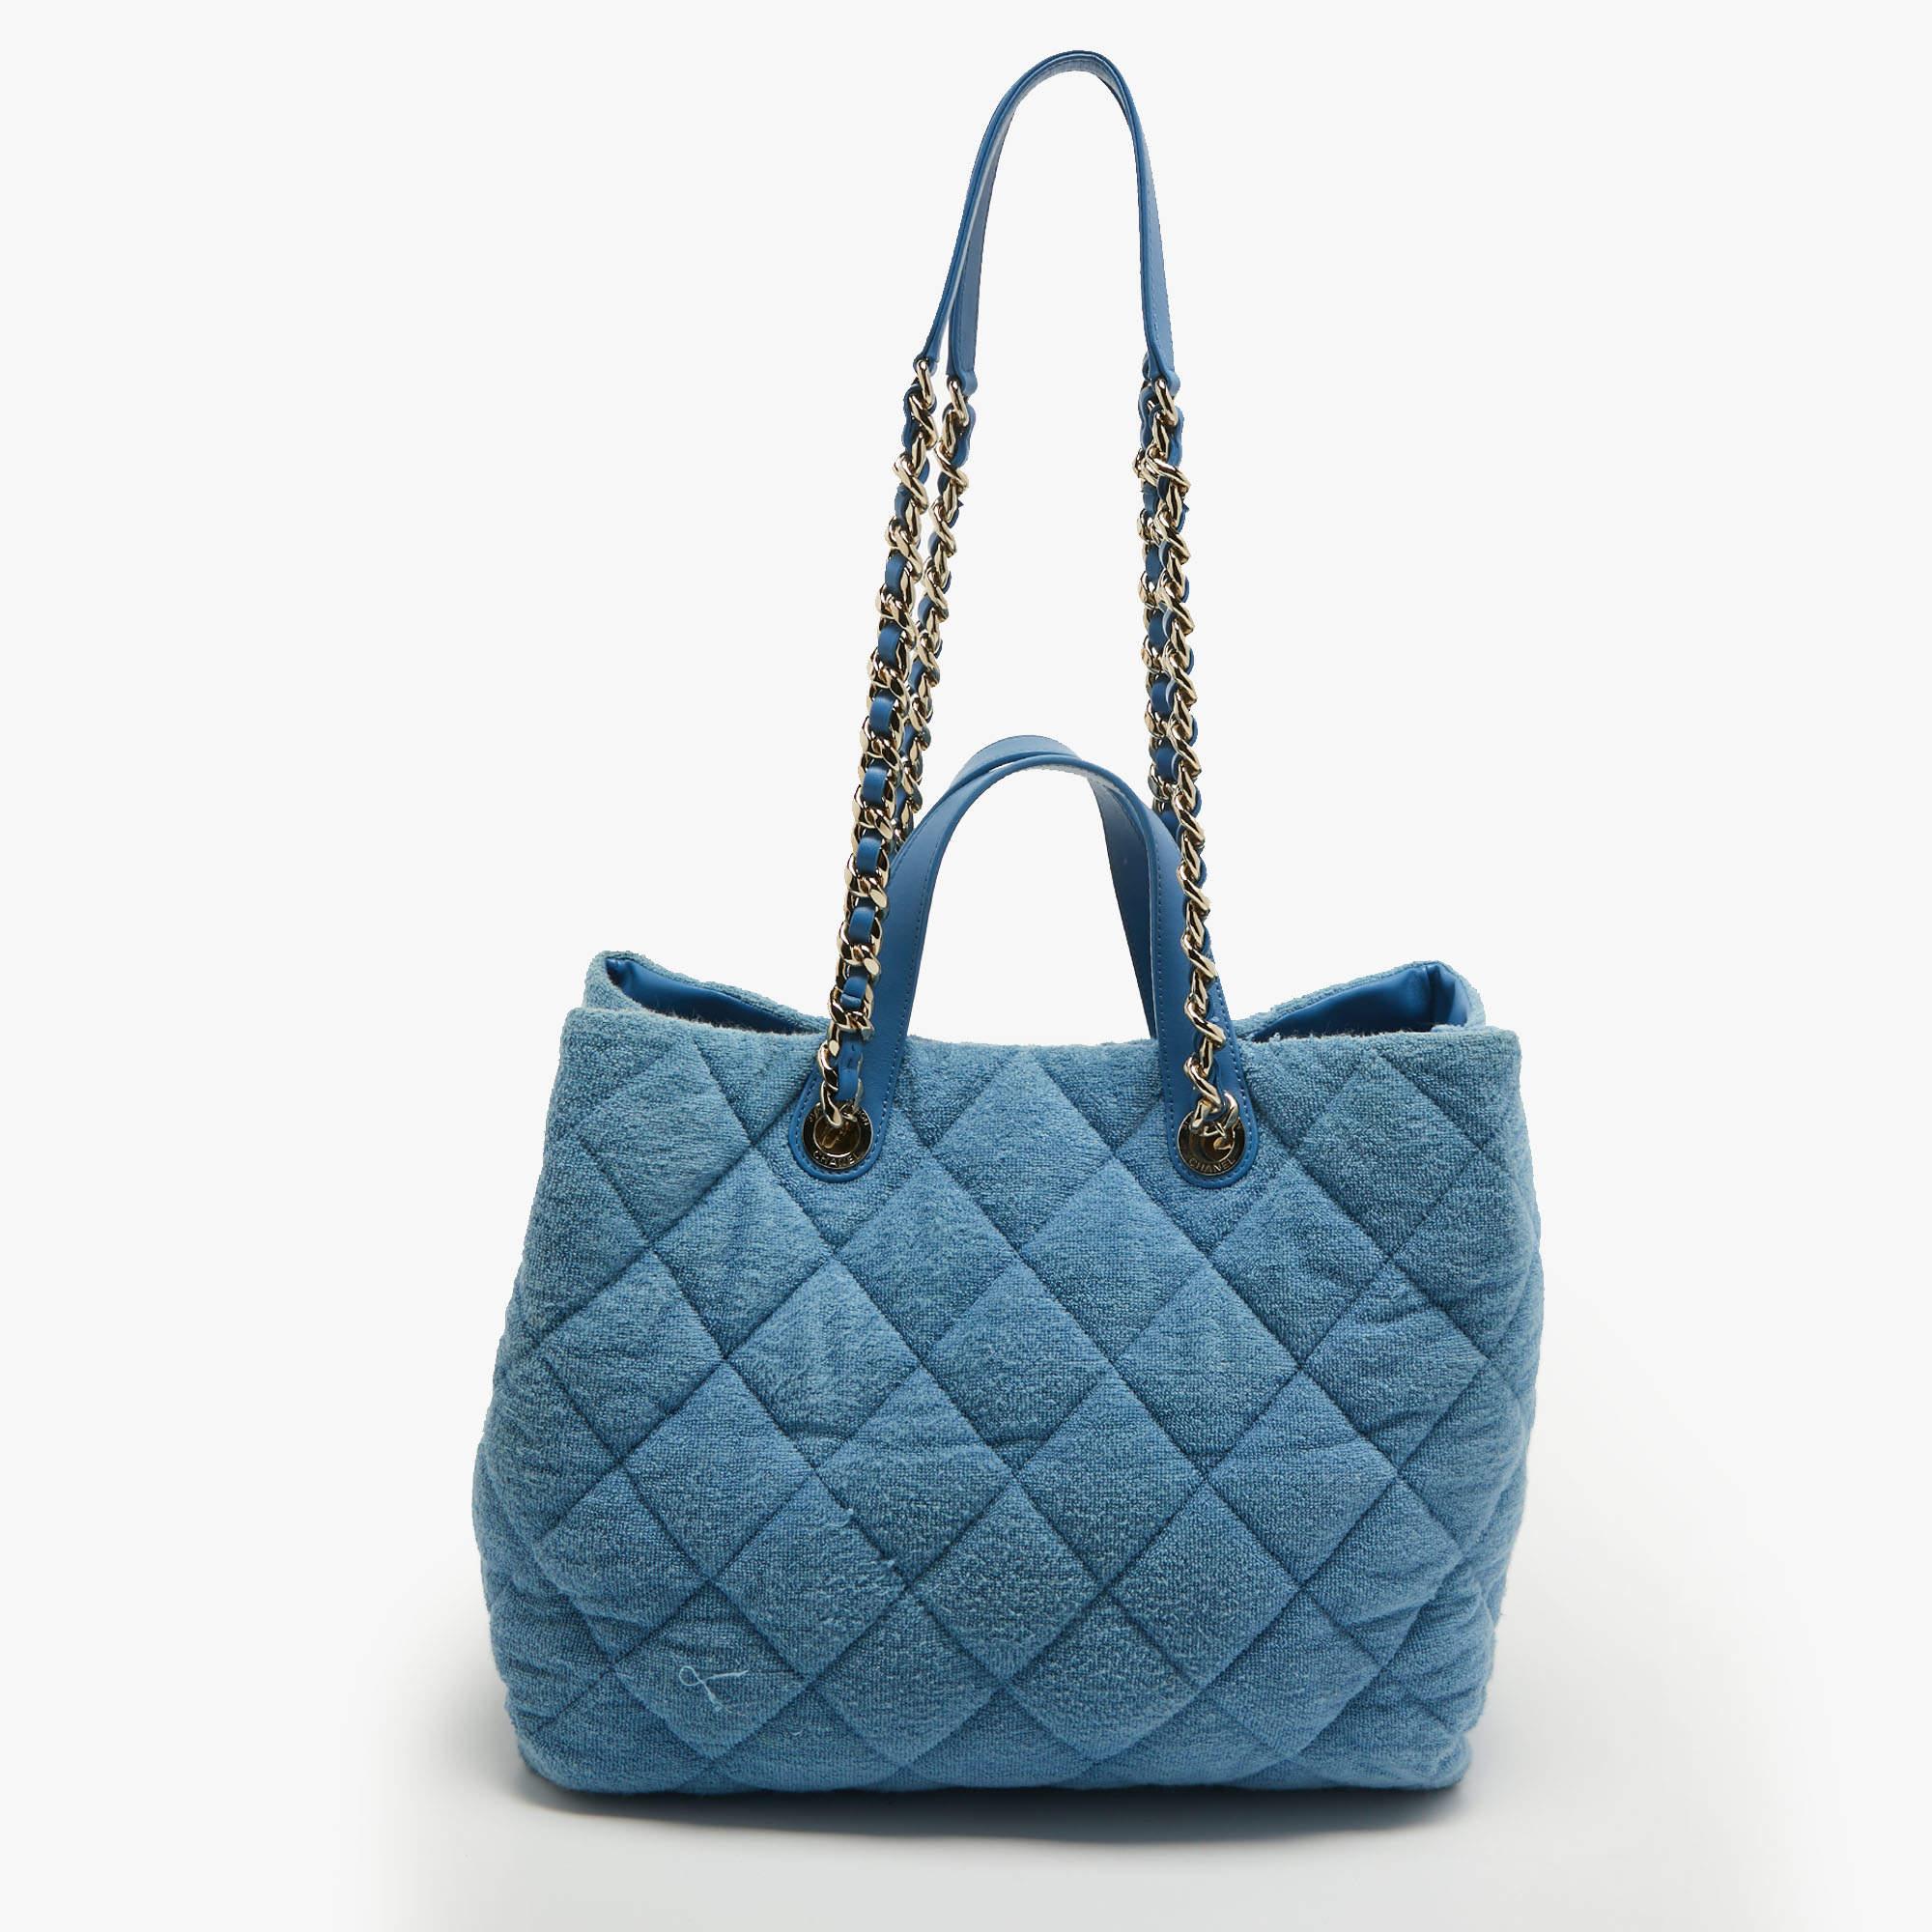 Mit dieser Tasche aus dem Hause Chanel, die eine wunderbare Balance zwischen Wesentlichkeit und Opulenz schafft, sind Ihre Bedürfnisse an Handtaschen erfüllt. Er ist mit praktischen Funktionen ausgestattet, die den Alltag erleichtern.

Enthält: